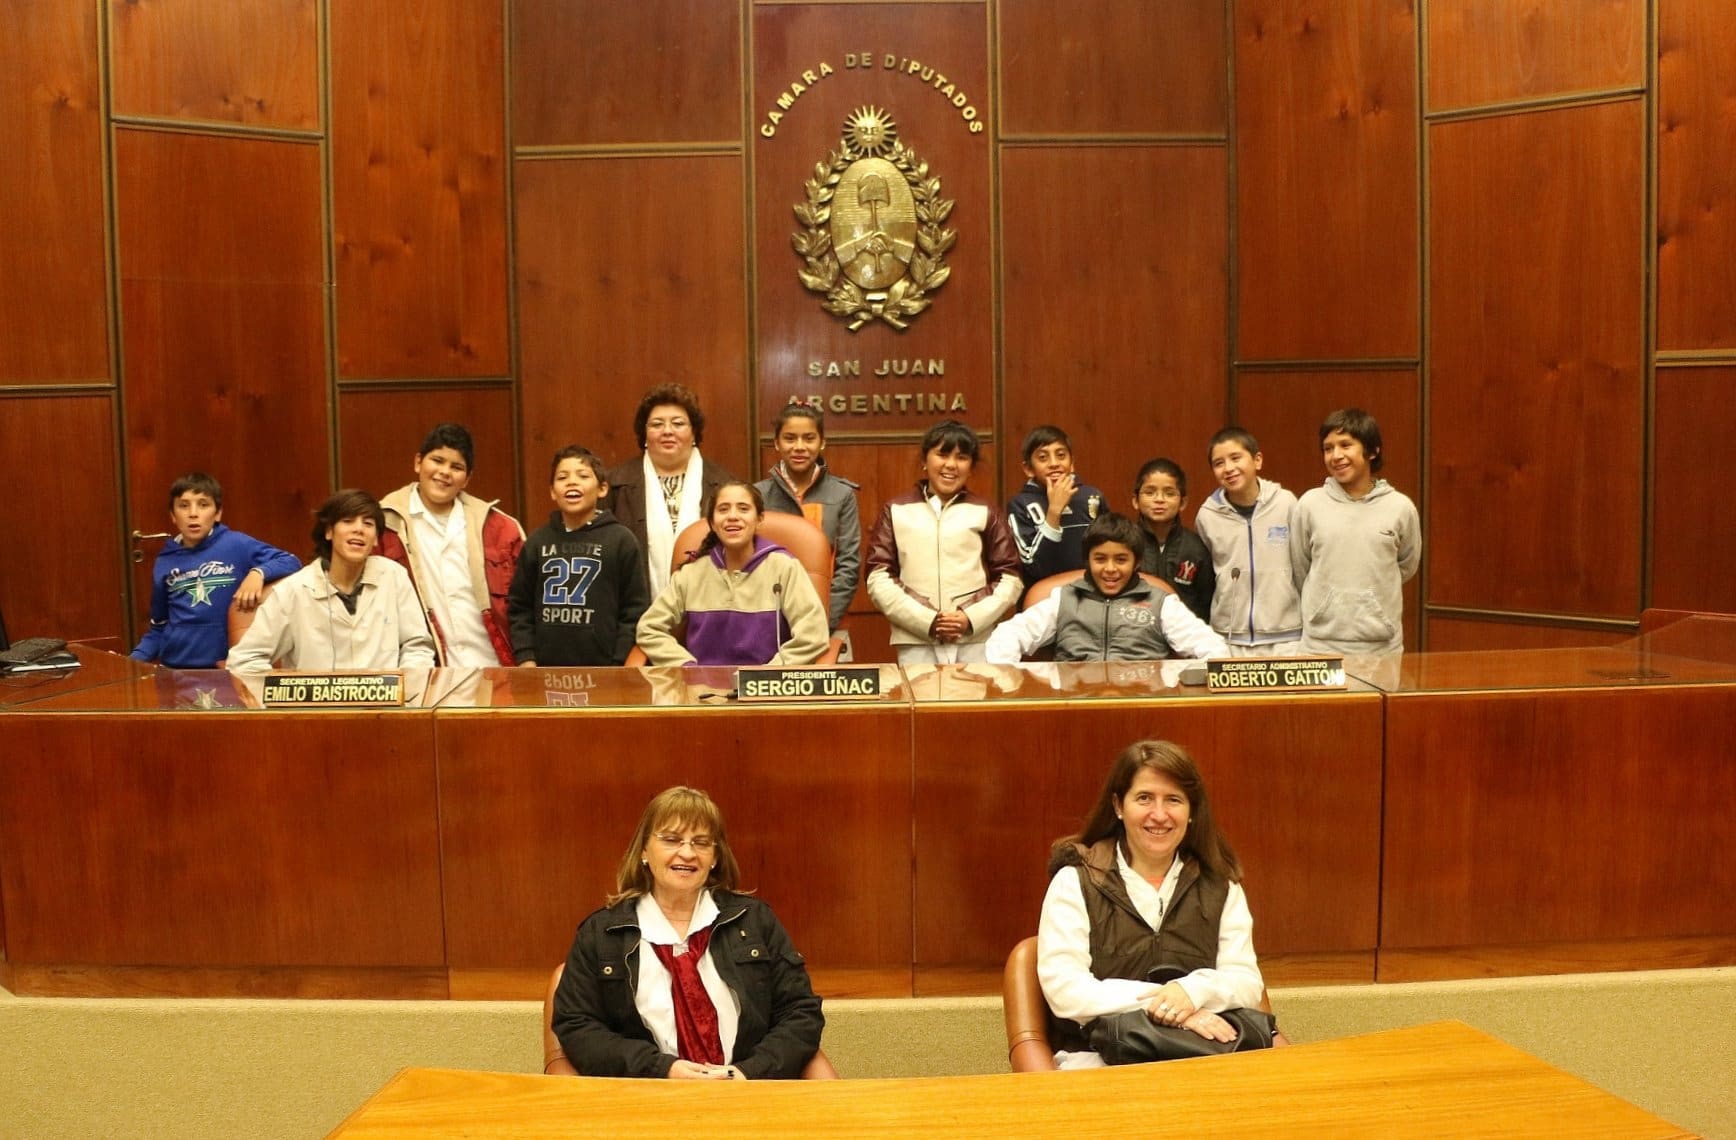 Los integrantes de la institución santaluceña visitaron el Recinto de Sesiones.